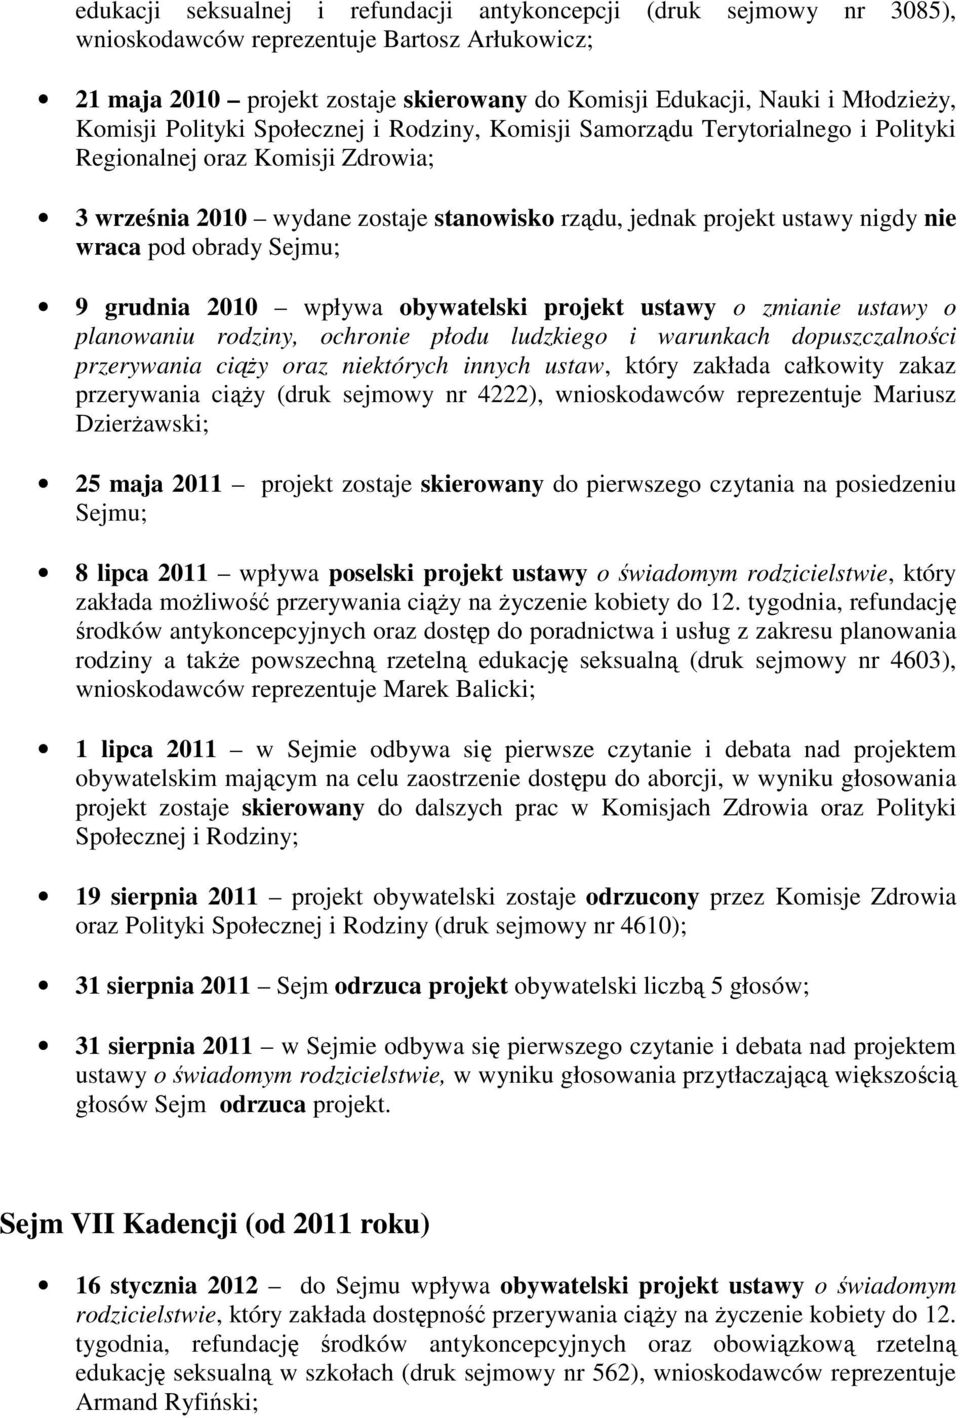 wraca pod obrady Sejmu; 9 grudnia 2010 wpływa obywatelski projekt ustawy o zmianie ustawy o przerywania ciąży oraz niektórych innych ustaw, który zakłada całkowity zakaz przerywania ciąży (druk